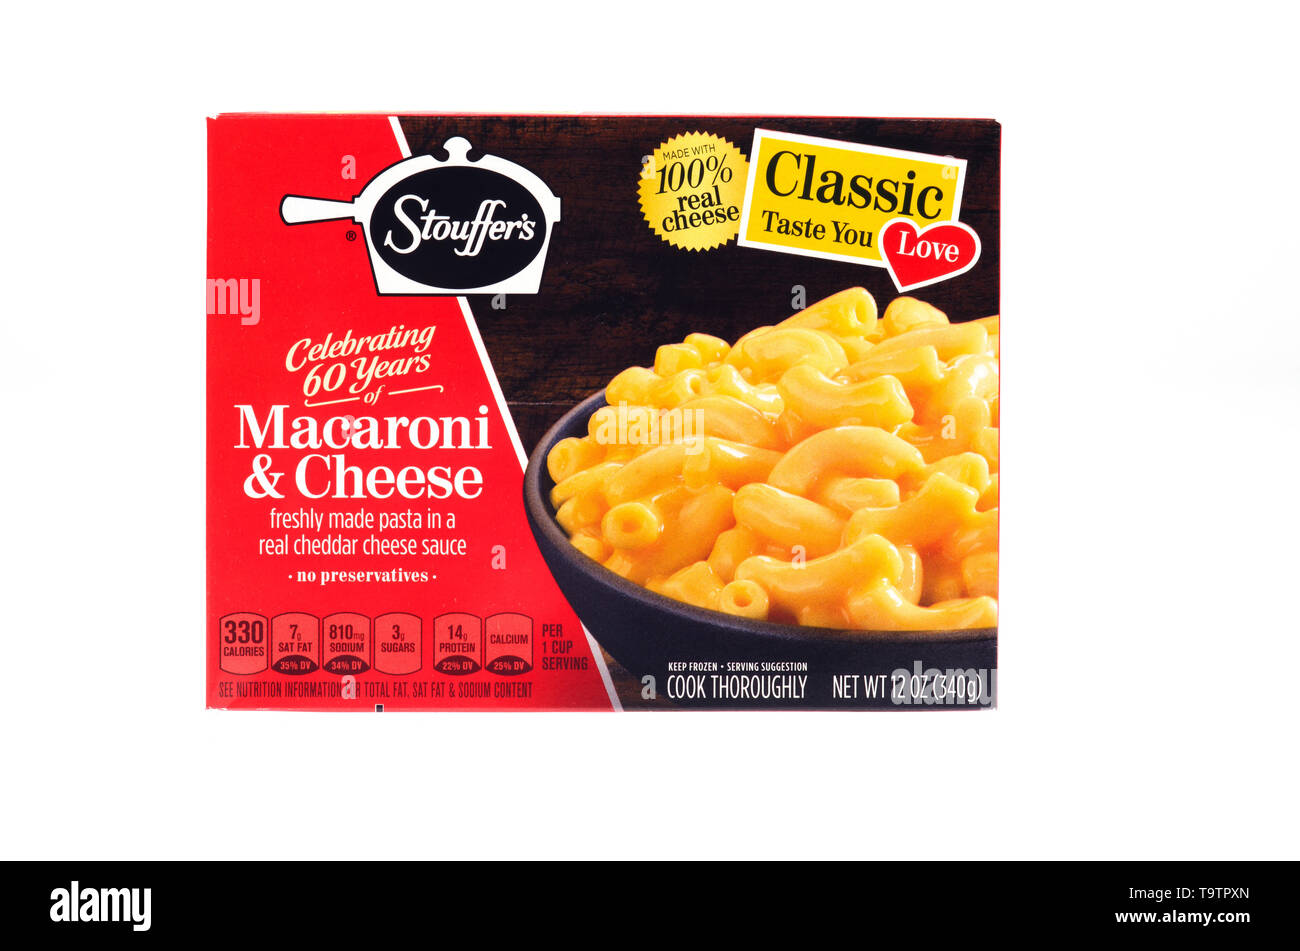 Stouffer’s Classic Macaroni & Cheese frozen food box Stock Photo